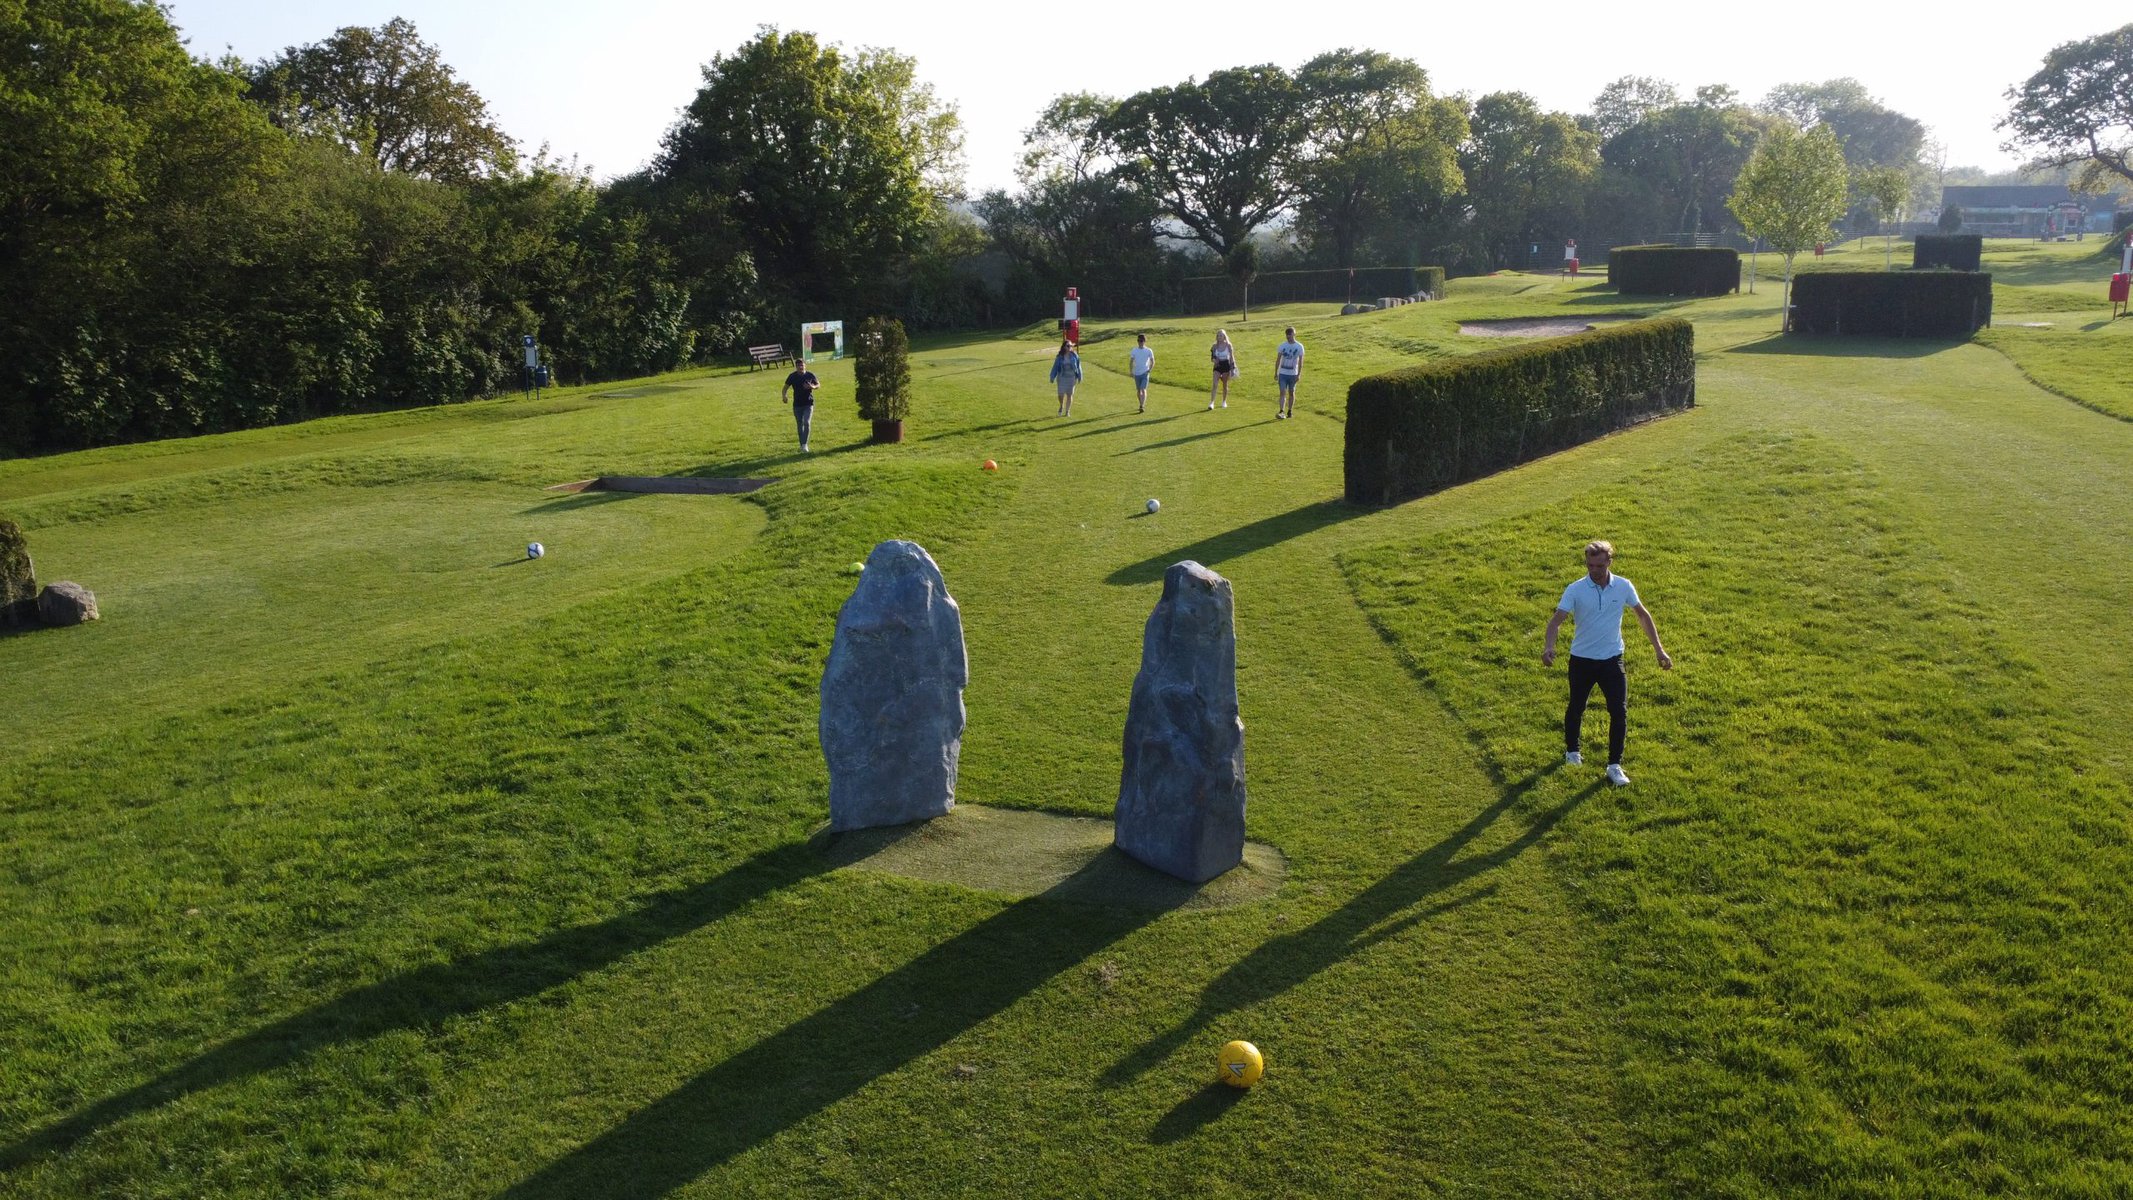 Outdoor Fun - Playing FootballGolf at Cornwall Football Golf Park